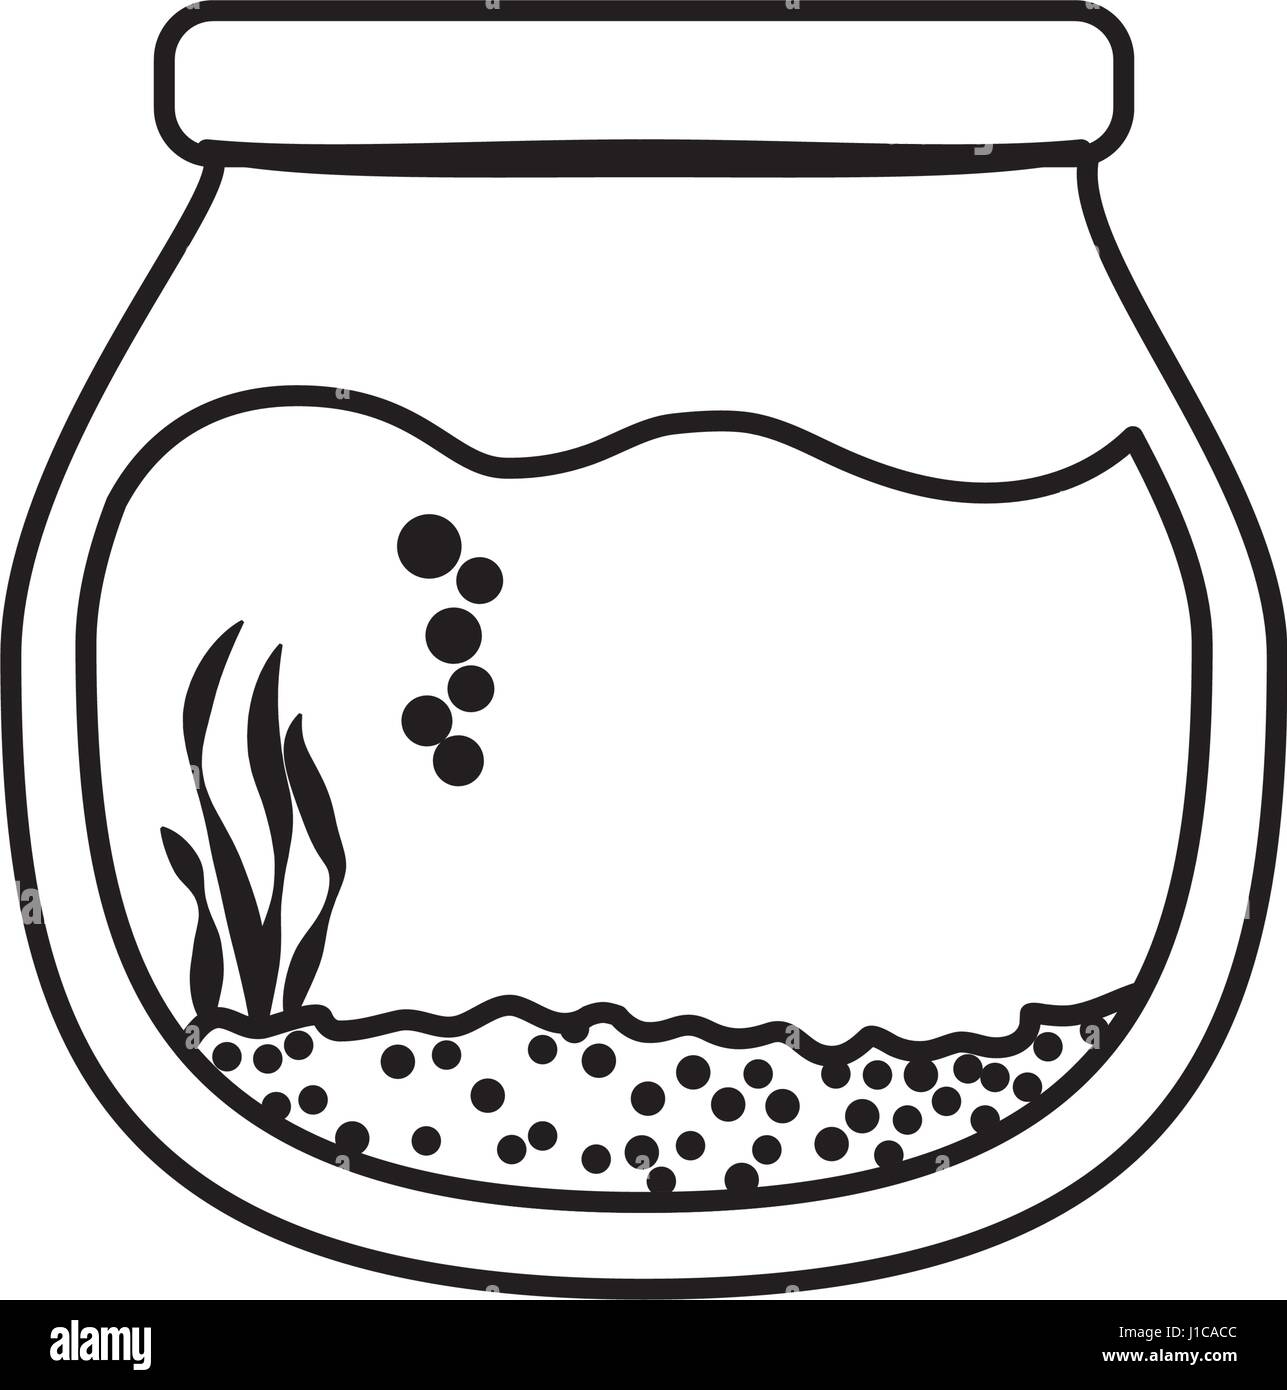 Goldfischglas Aquarium Schüssel Stock-Vektorgrafik - Alamy